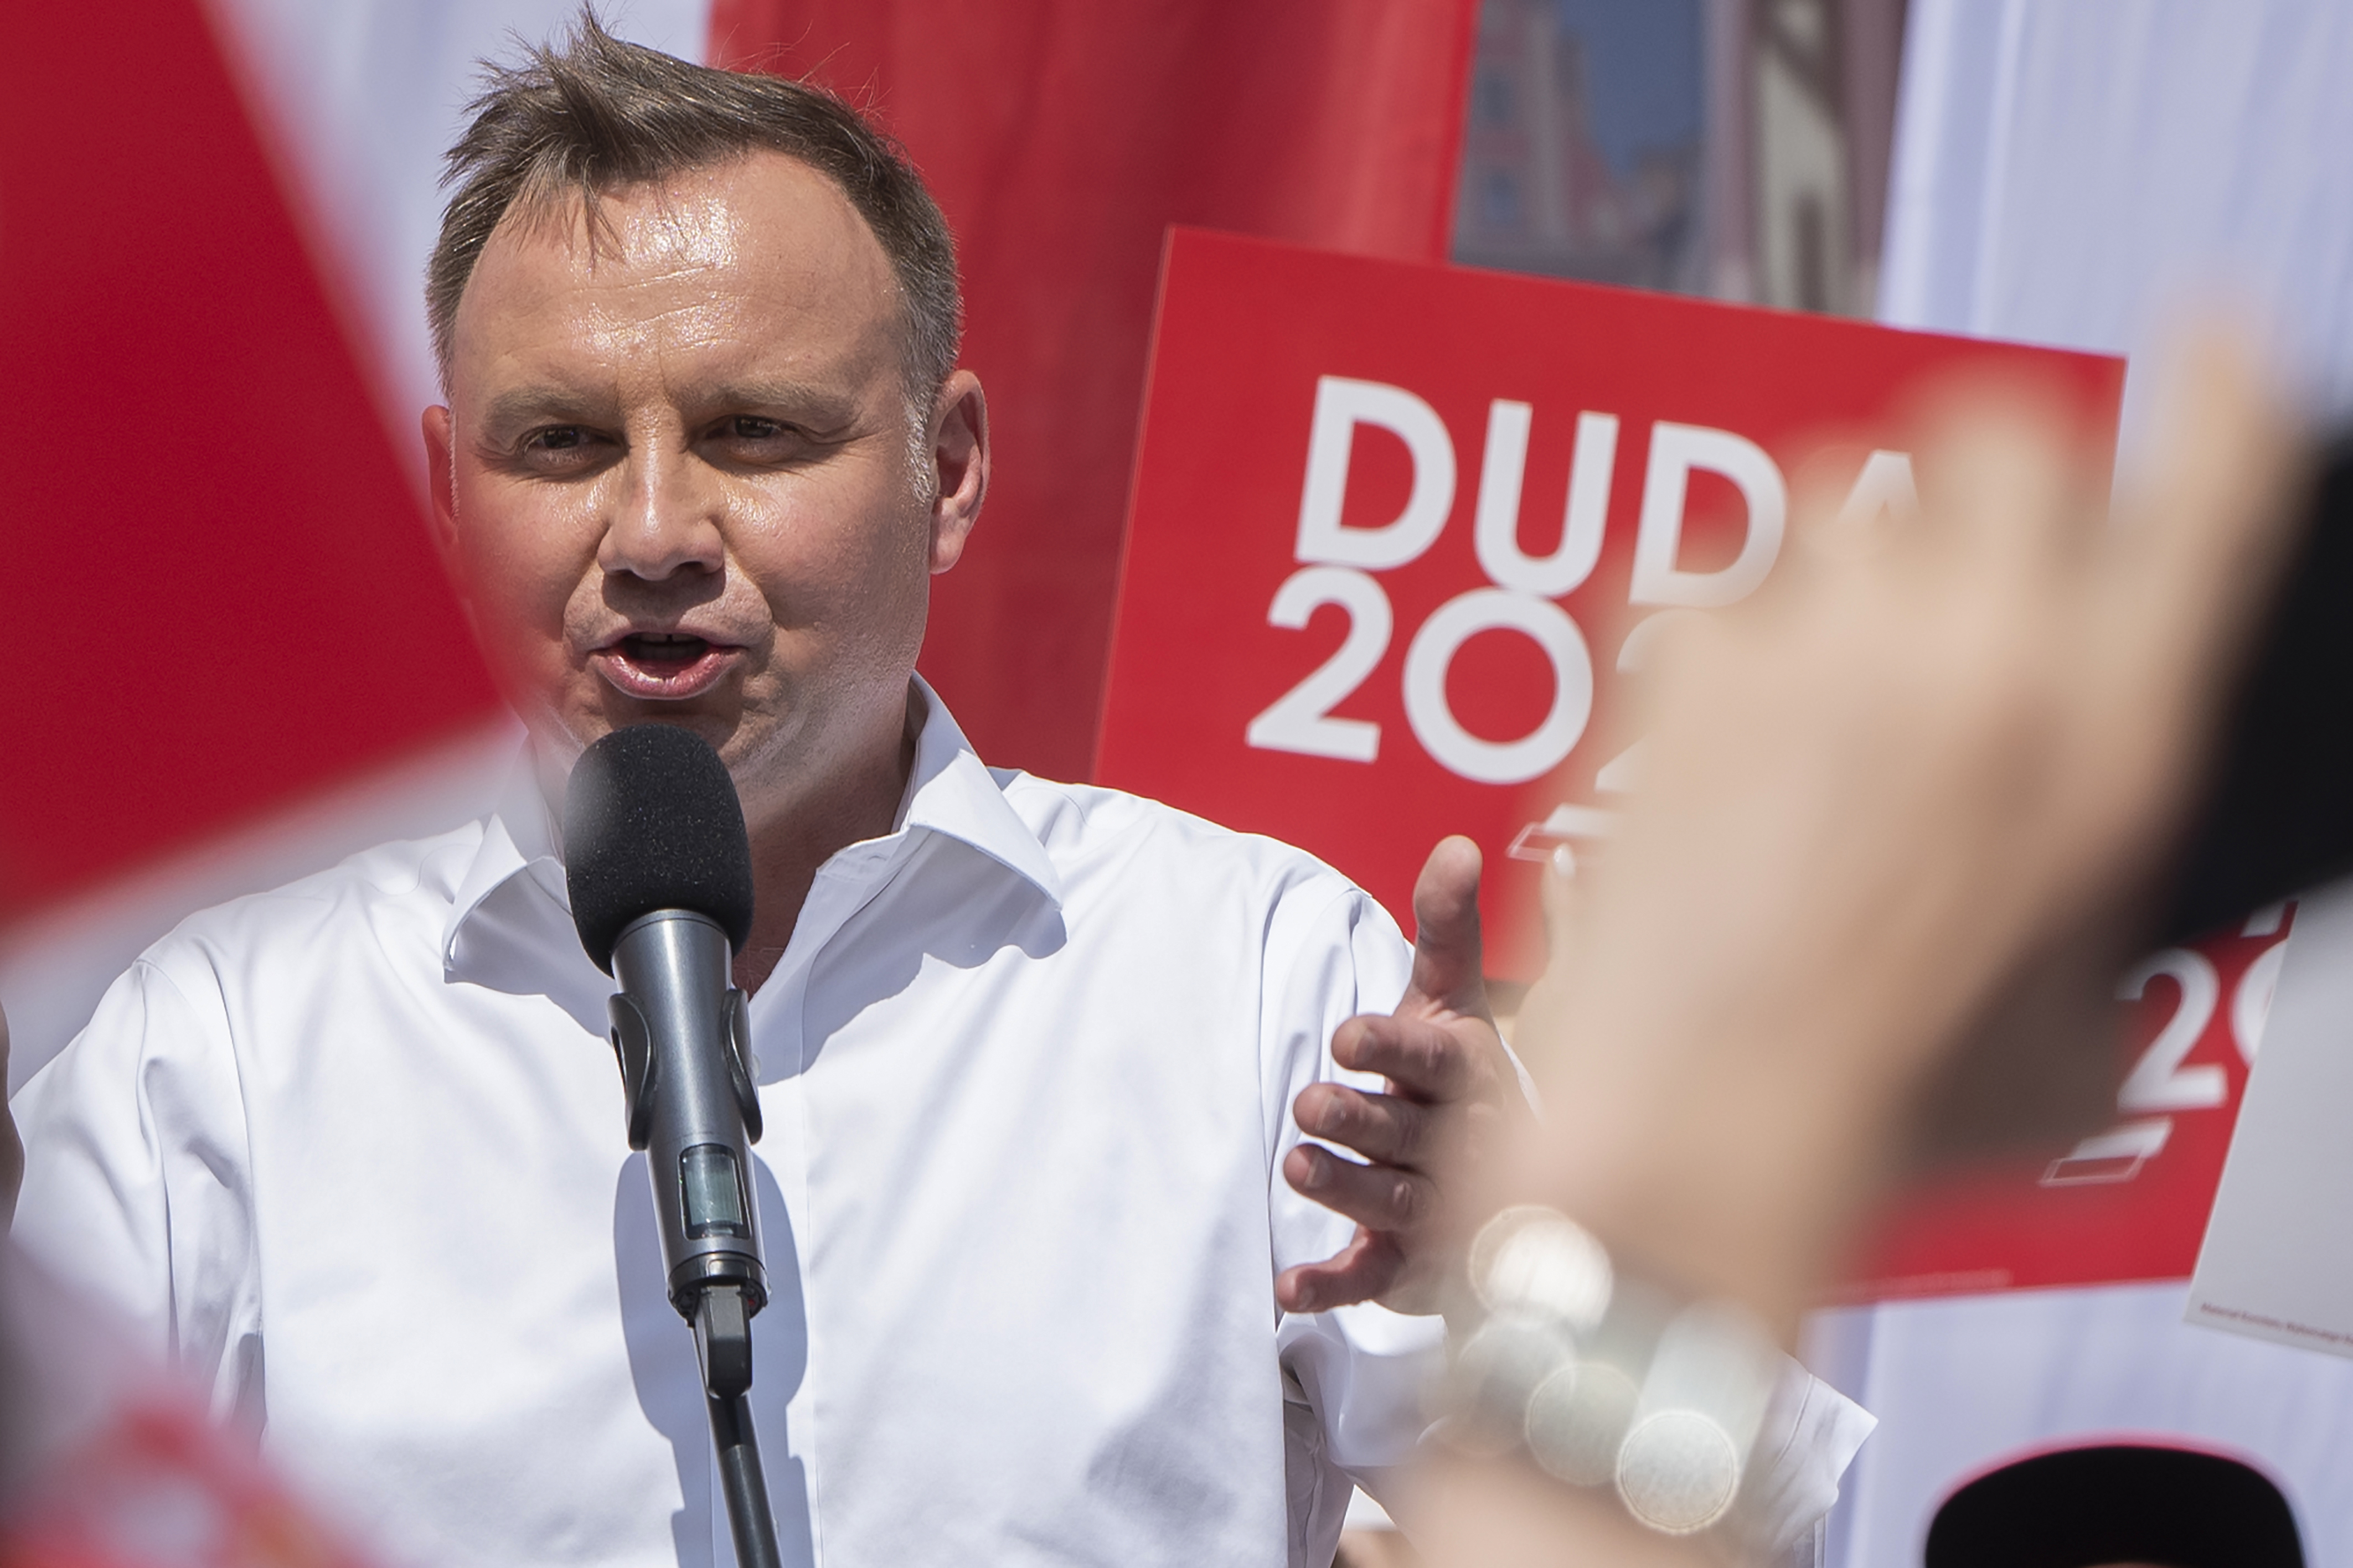 Rendkívül szoros a lengyel elnökválasztás, Duda a felmérések szerint 1-2 százalékkal vezethet